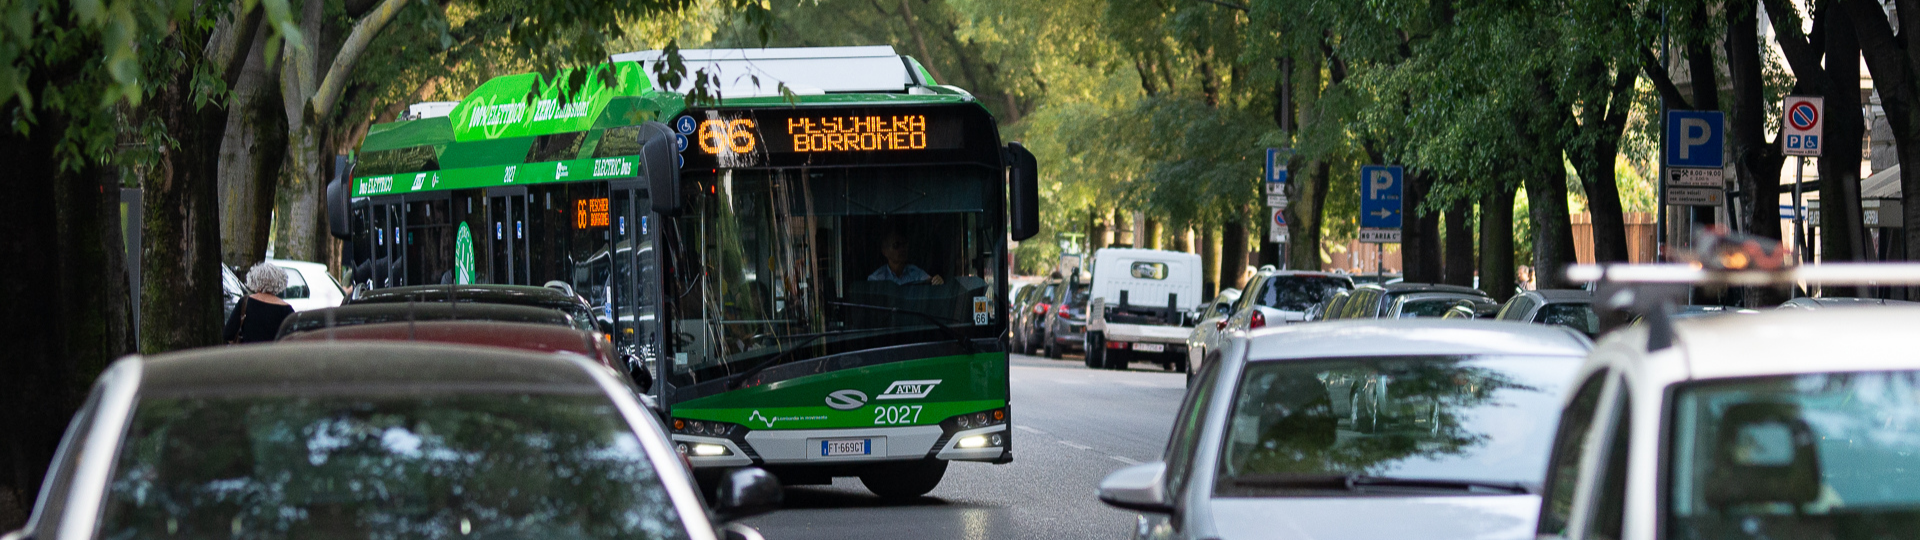 Fortsetzung der Bestellungen aus Mailand – 75 elektrisch betriebene Solaris-Busse fahren nach Italien